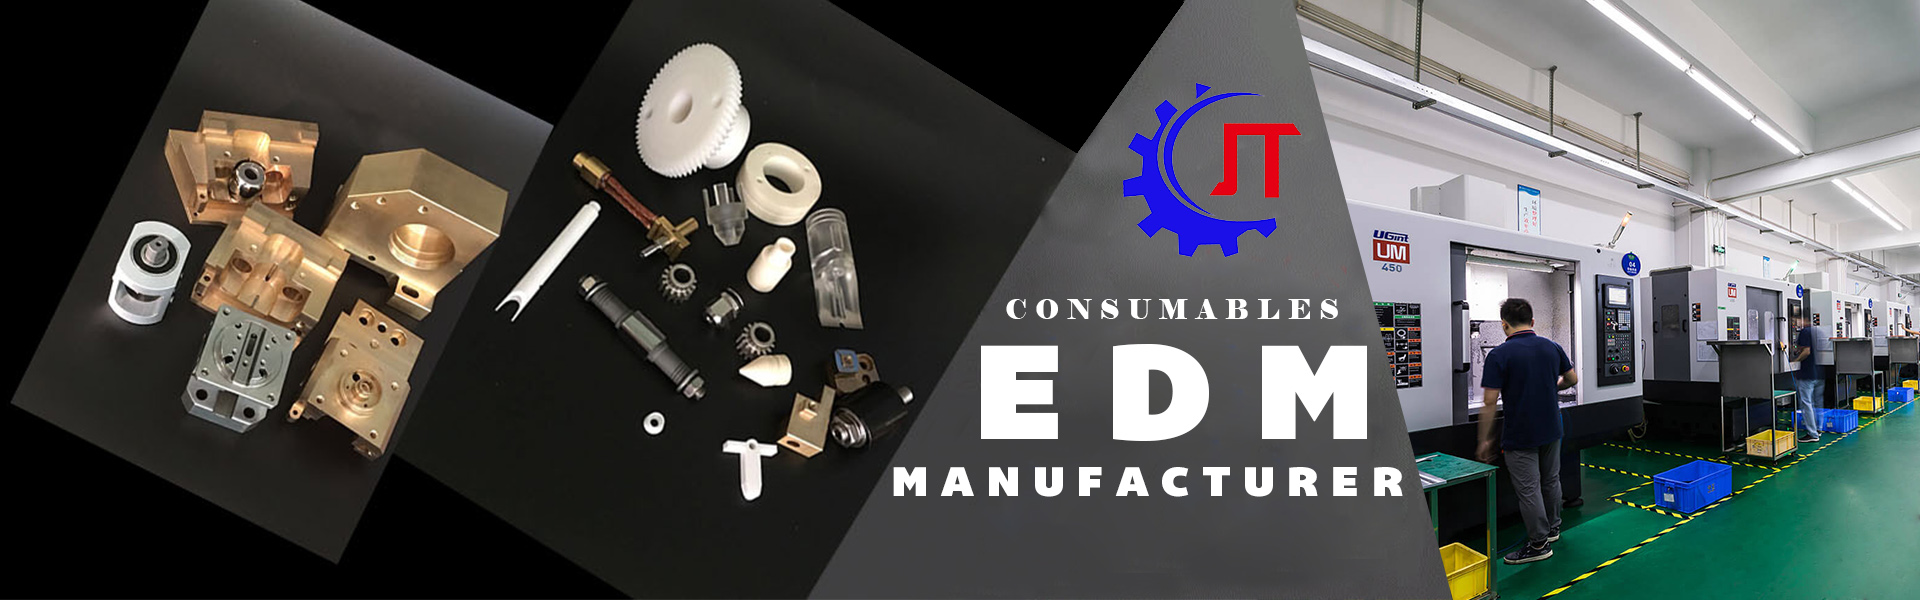 Suprimentos e consumíveis EDM superiores, produtos de manutenção e peças de desgaste, peças de reposição EDM cortadas de arame,Dong Guan Jiatuo precision manufacturer Co;LTD